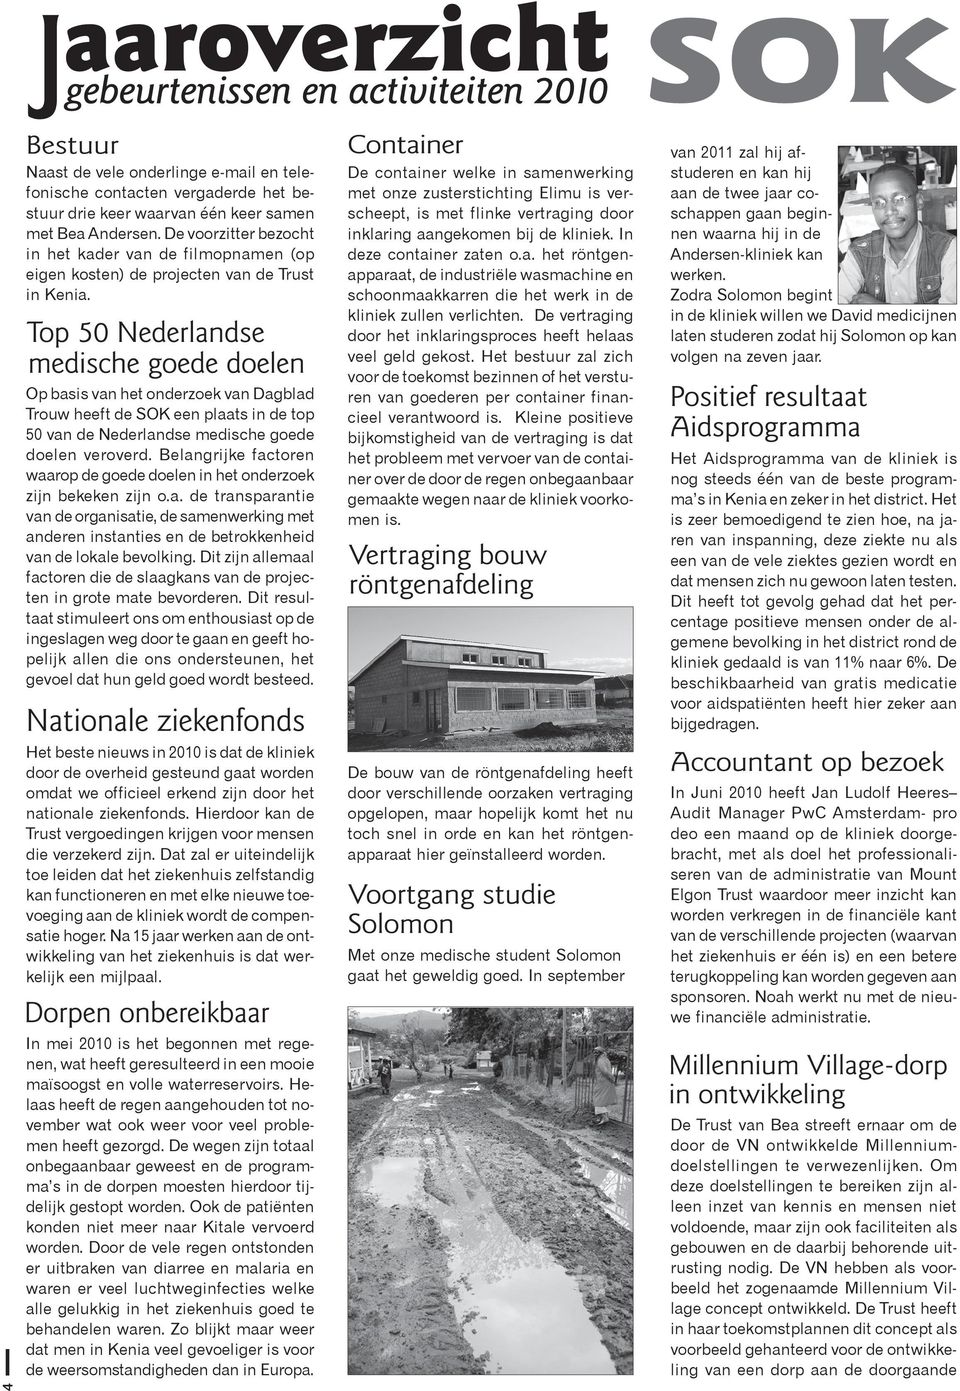 Op basis van het onderzoek van Dagblad Trouw heeft de SOK een plaats in de top 50 van de Nederlandse medische goede doelen veroverd.